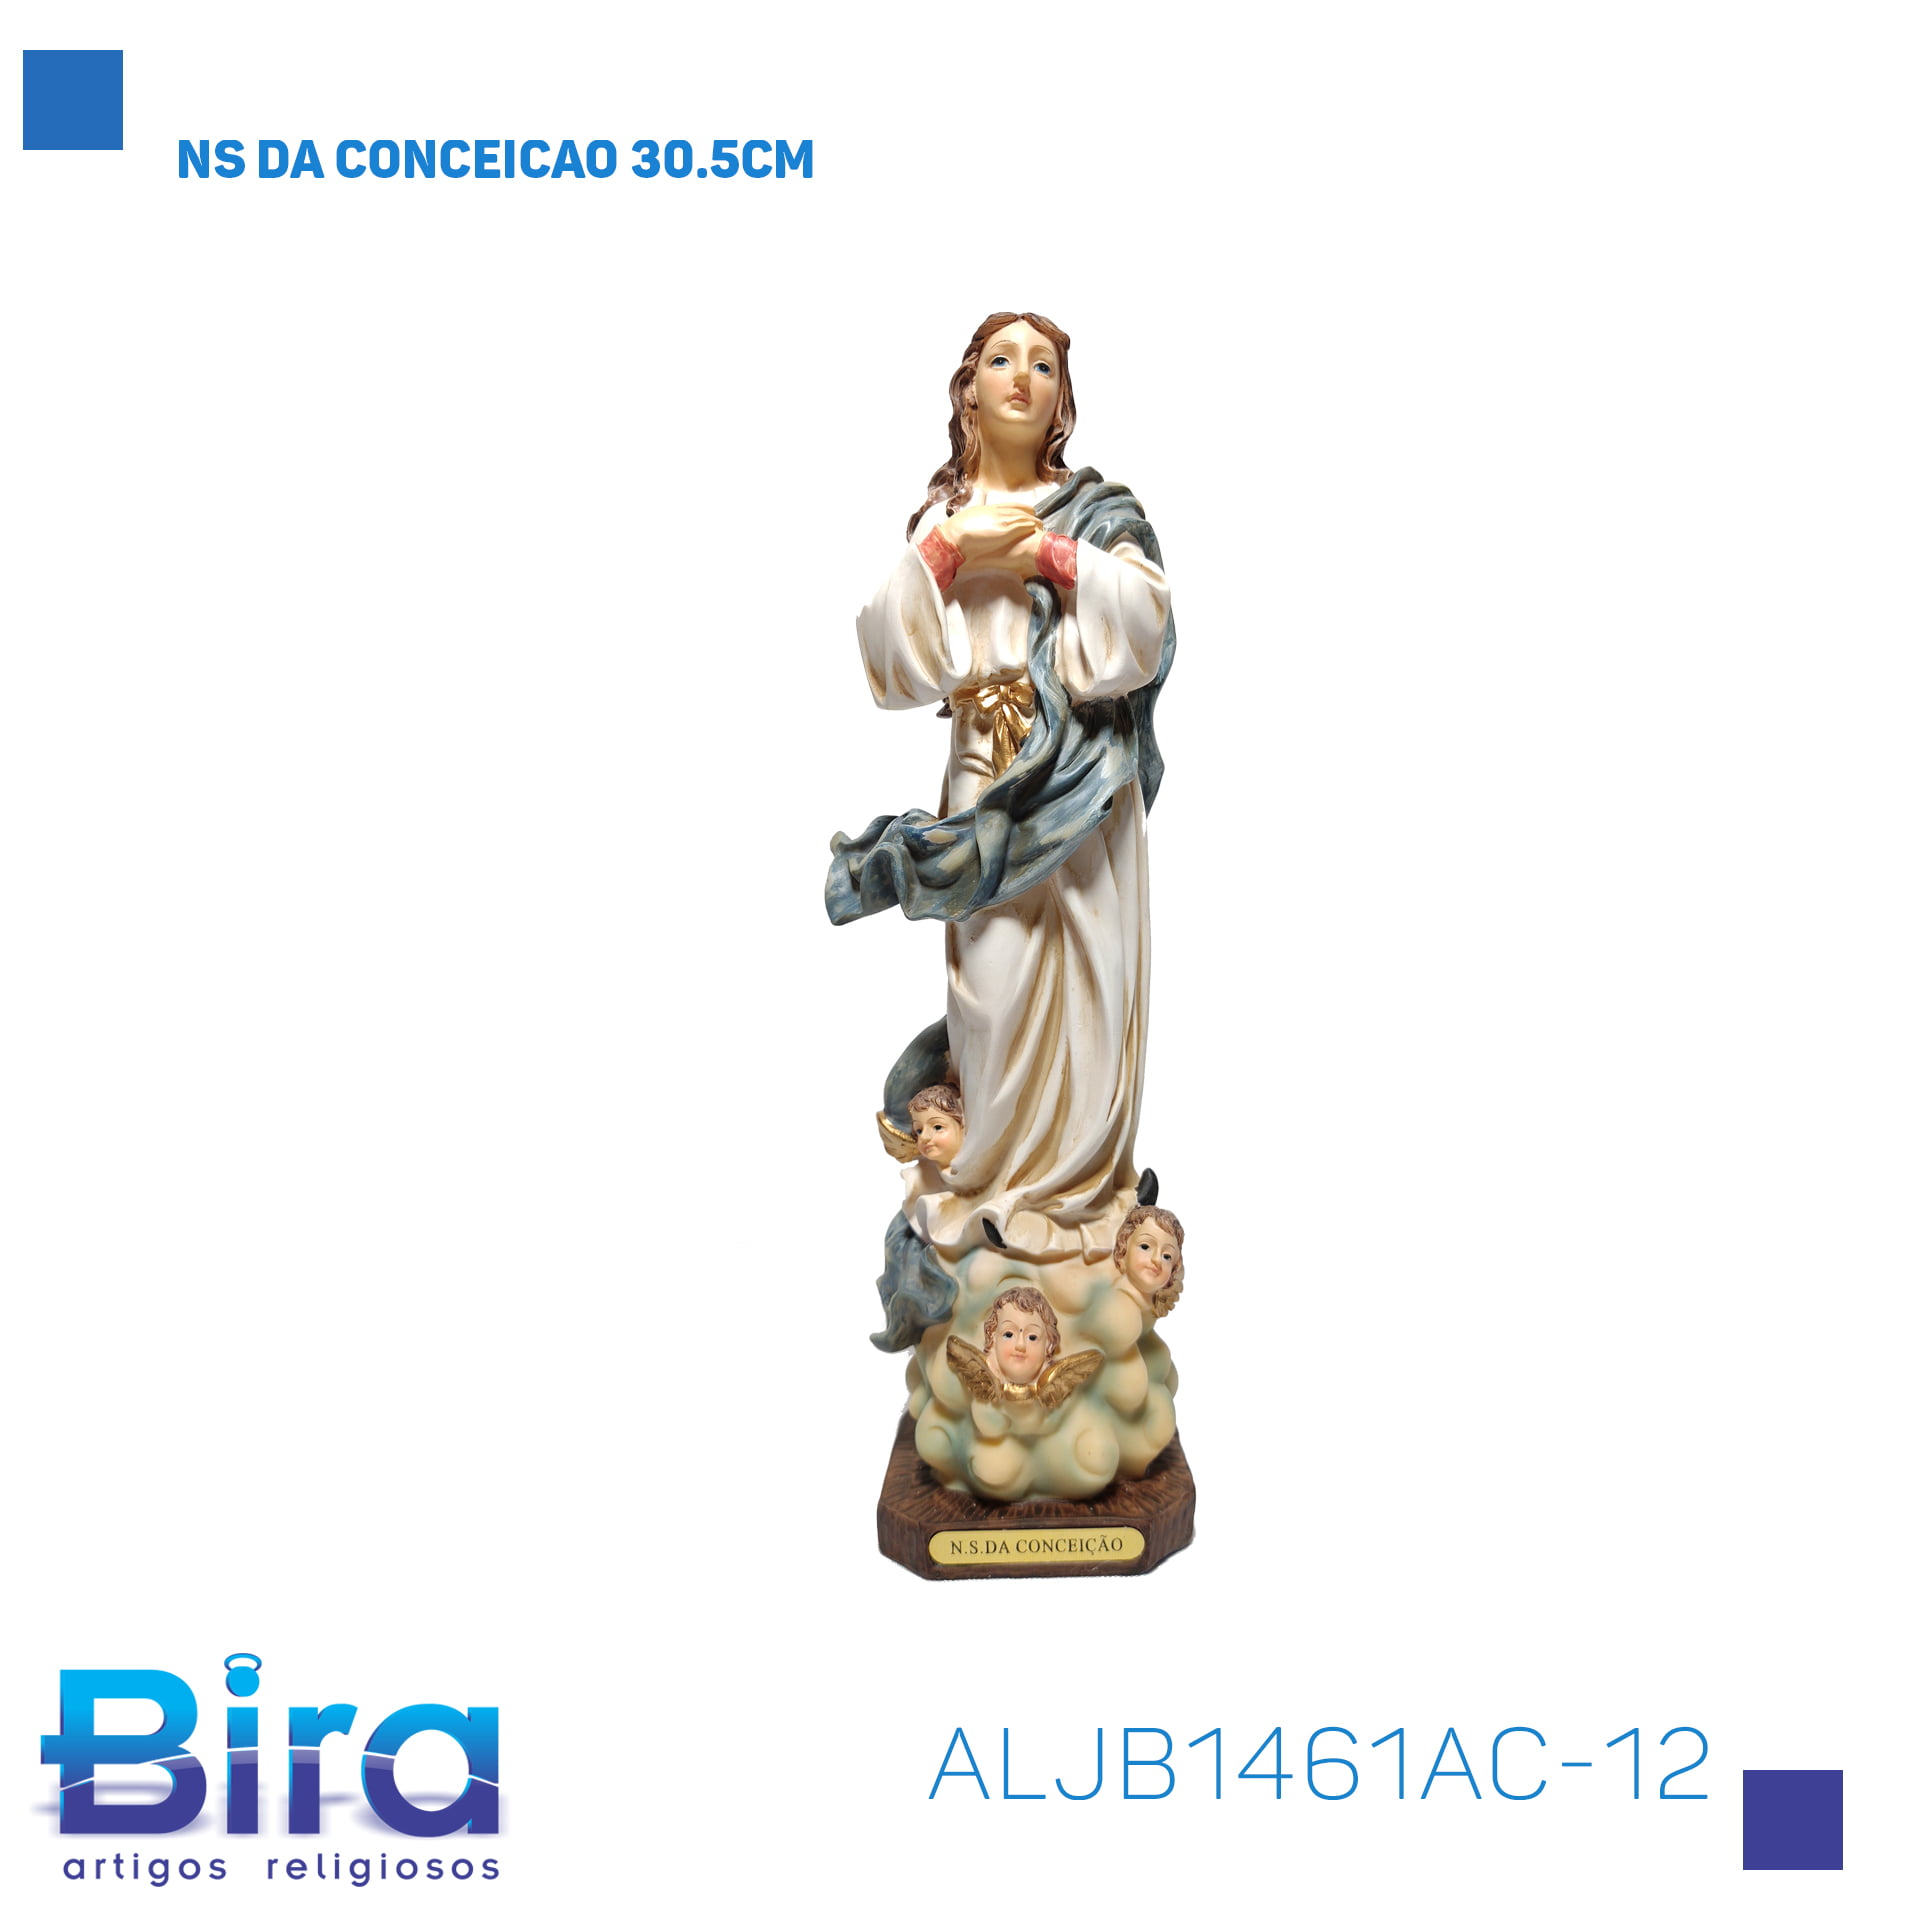 Bira Artigos Religiosos - NS DA CONCEICAO 30.5CM - Cód. ALJB1461AC-12